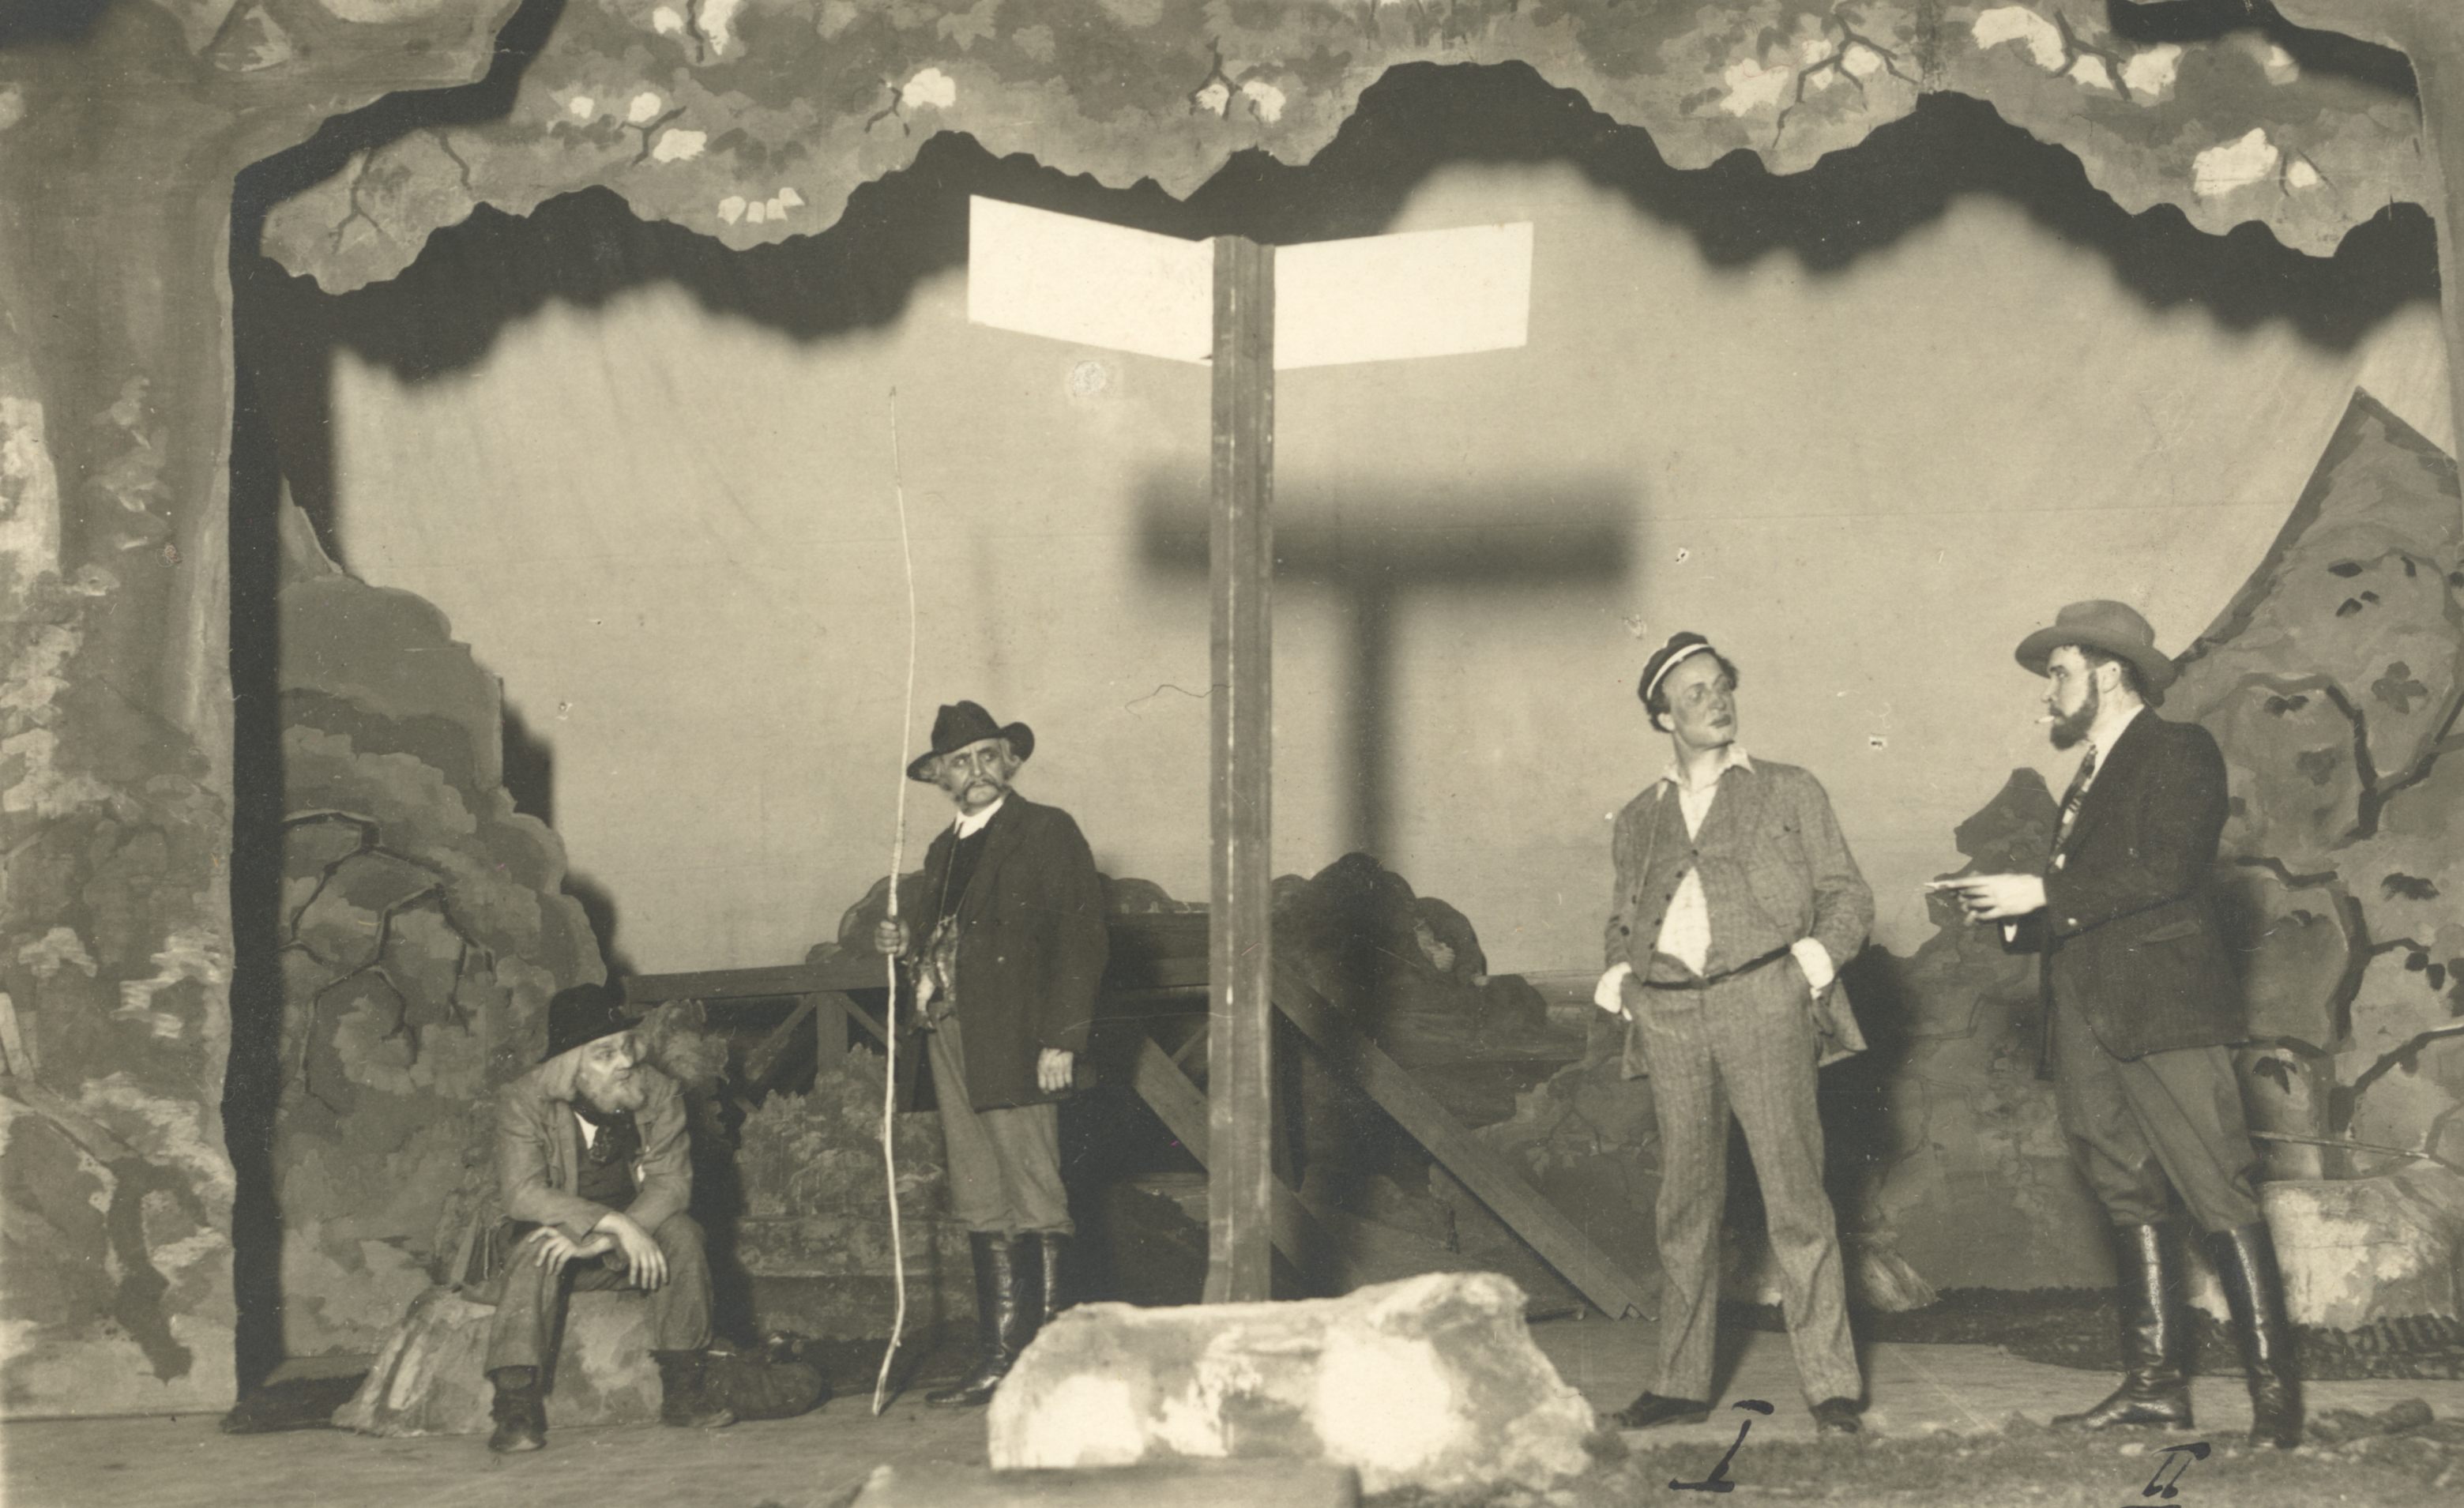 A. Kitzberg's "The Fucked Farm" in Viibur City Theatre 19th Dec. 1929